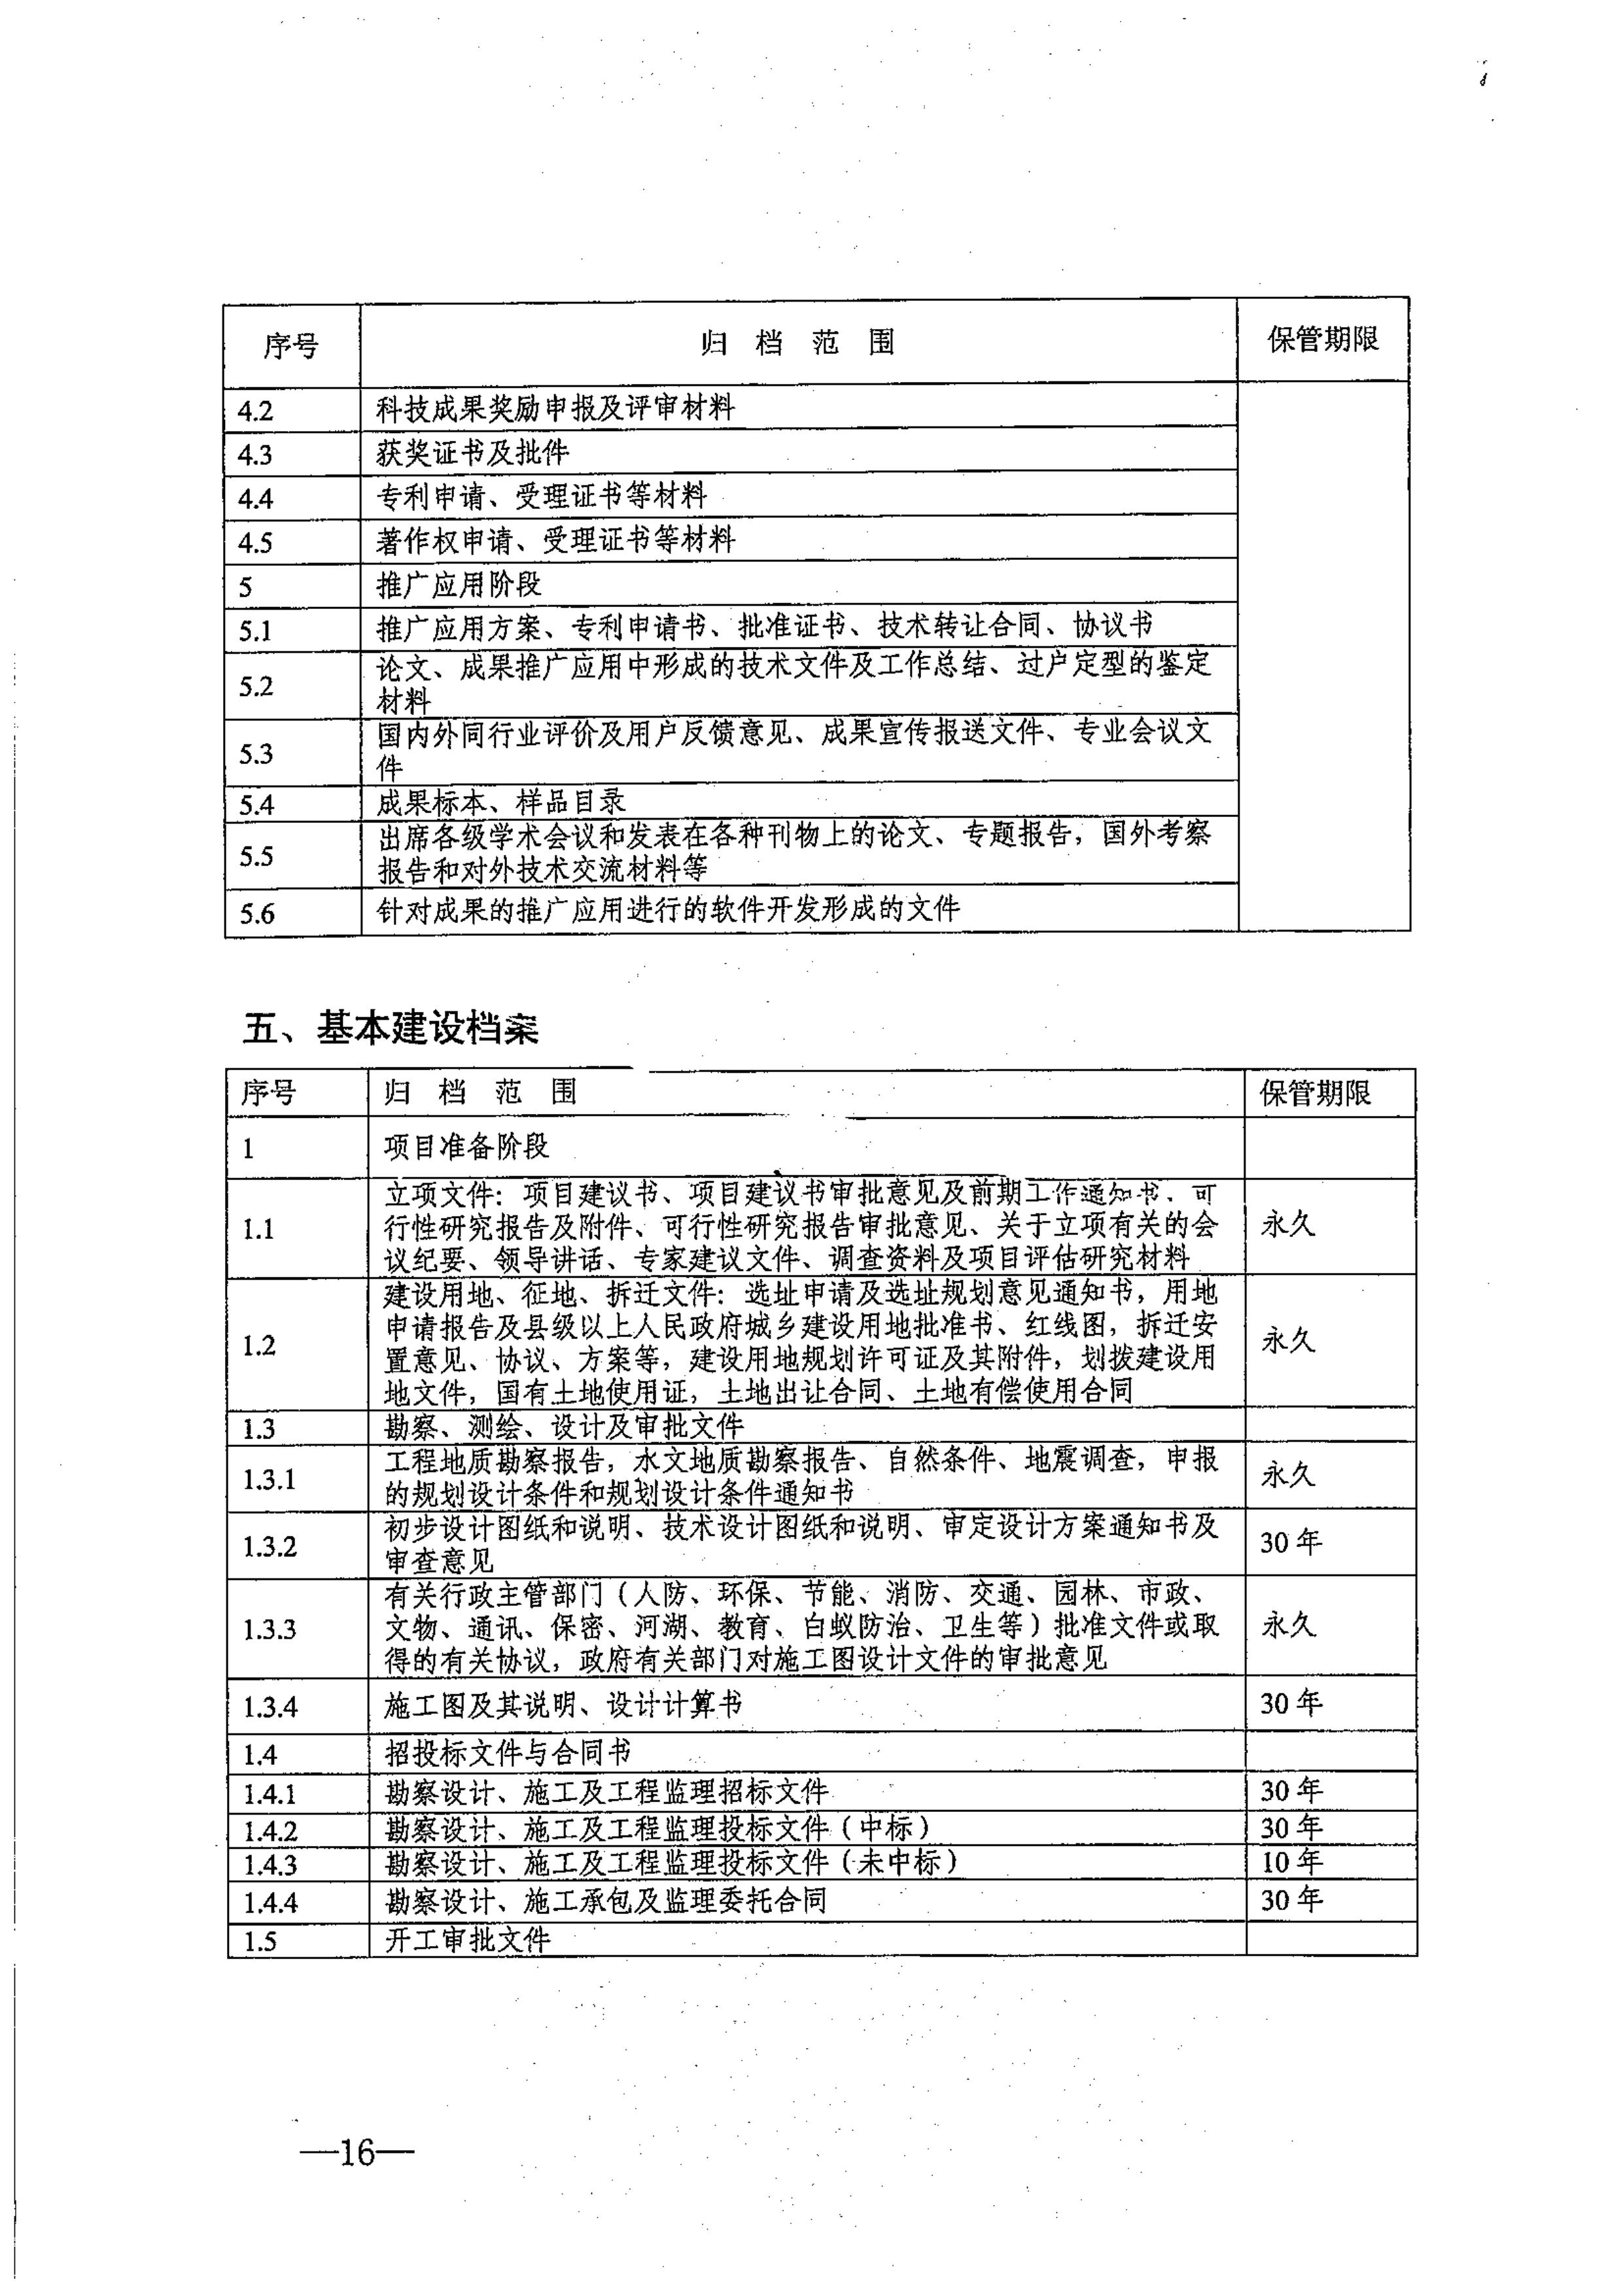 省教育厅、省档案局关于印发《江苏省中小学校档案管理暂行办法》的通知-图片-0016